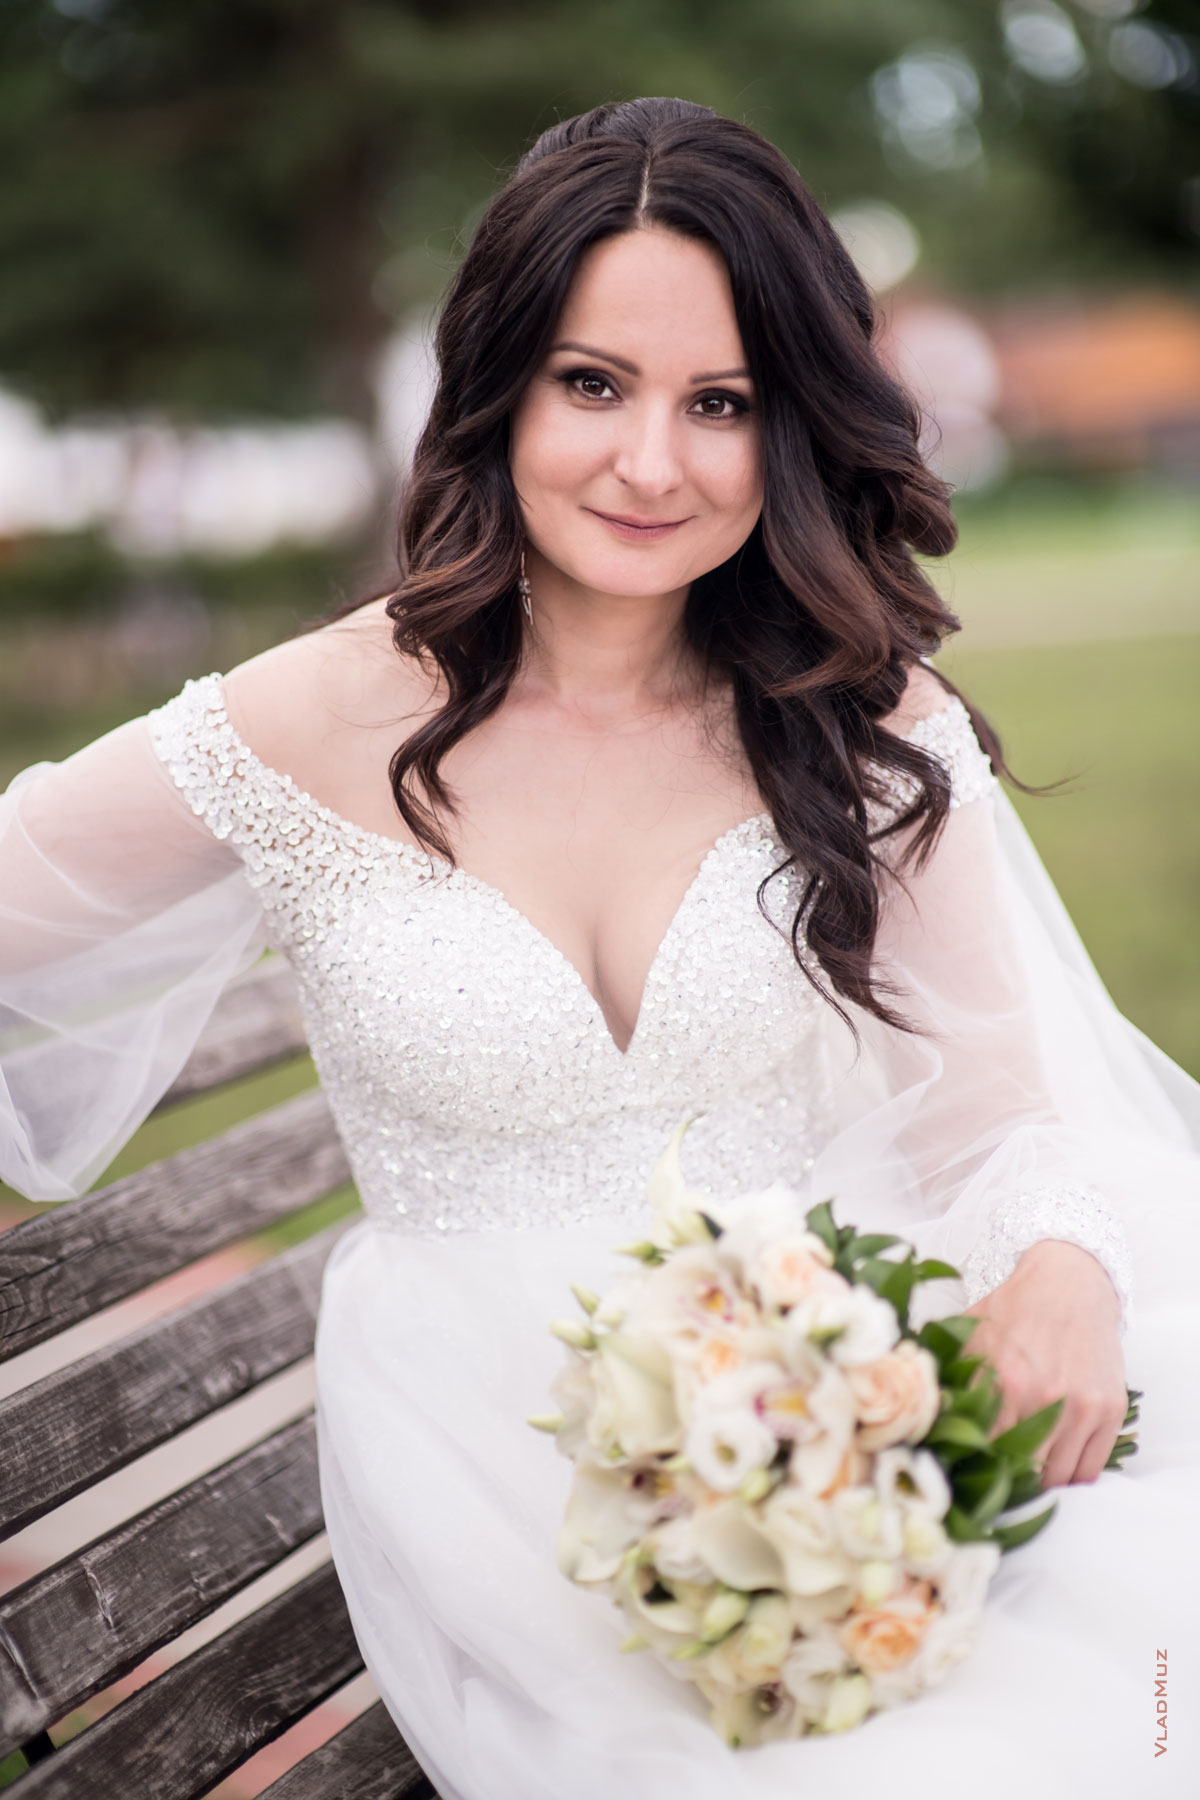 Фото невесты, сидя на лавочке, со свадебным букетом